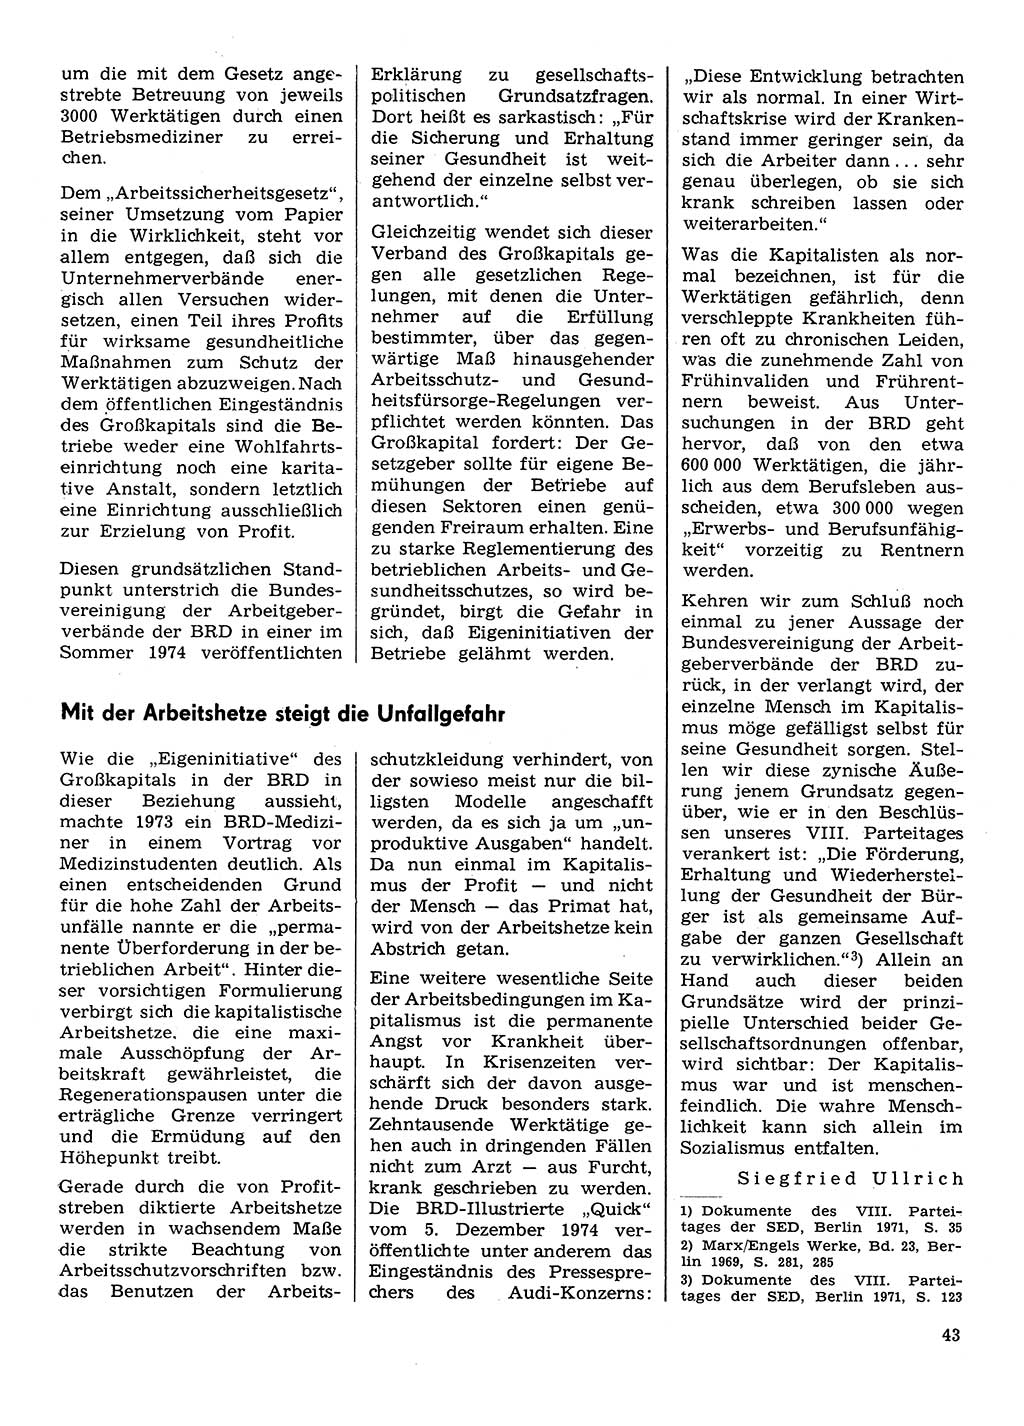 Neuer Weg (NW), Organ des Zentralkomitees (ZK) der SED (Sozialistische Einheitspartei Deutschlands) für Fragen des Parteilebens, 30. Jahrgang [Deutsche Demokratische Republik (DDR)] 1975, Seite 43 (NW ZK SED DDR 1975, S. 43)